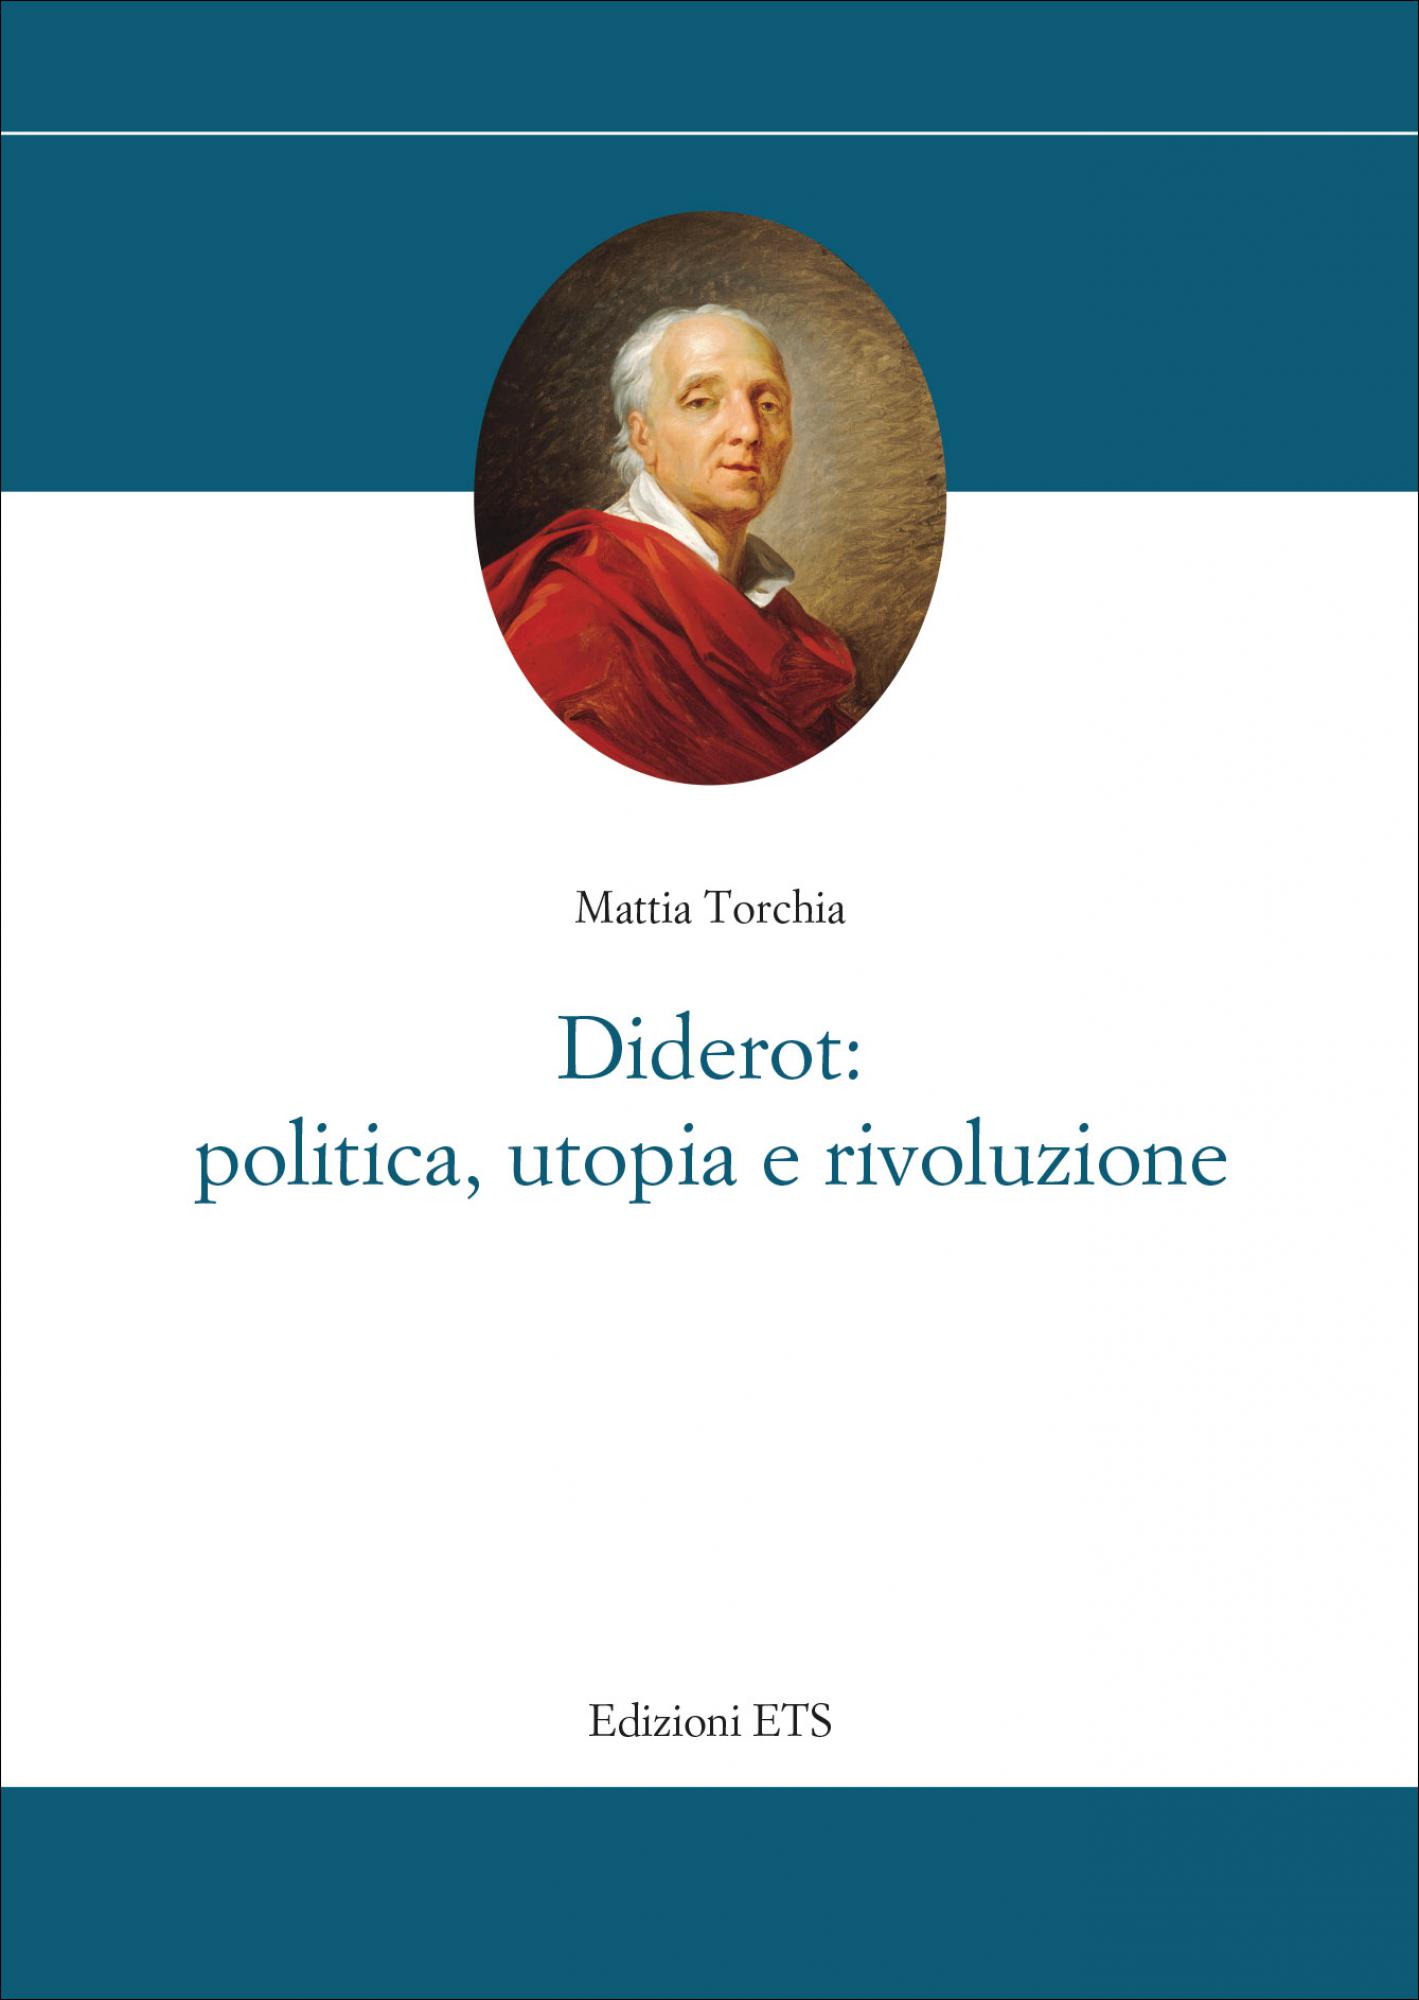 <div>Diderot: politica, utopia e rivoluzione</div>